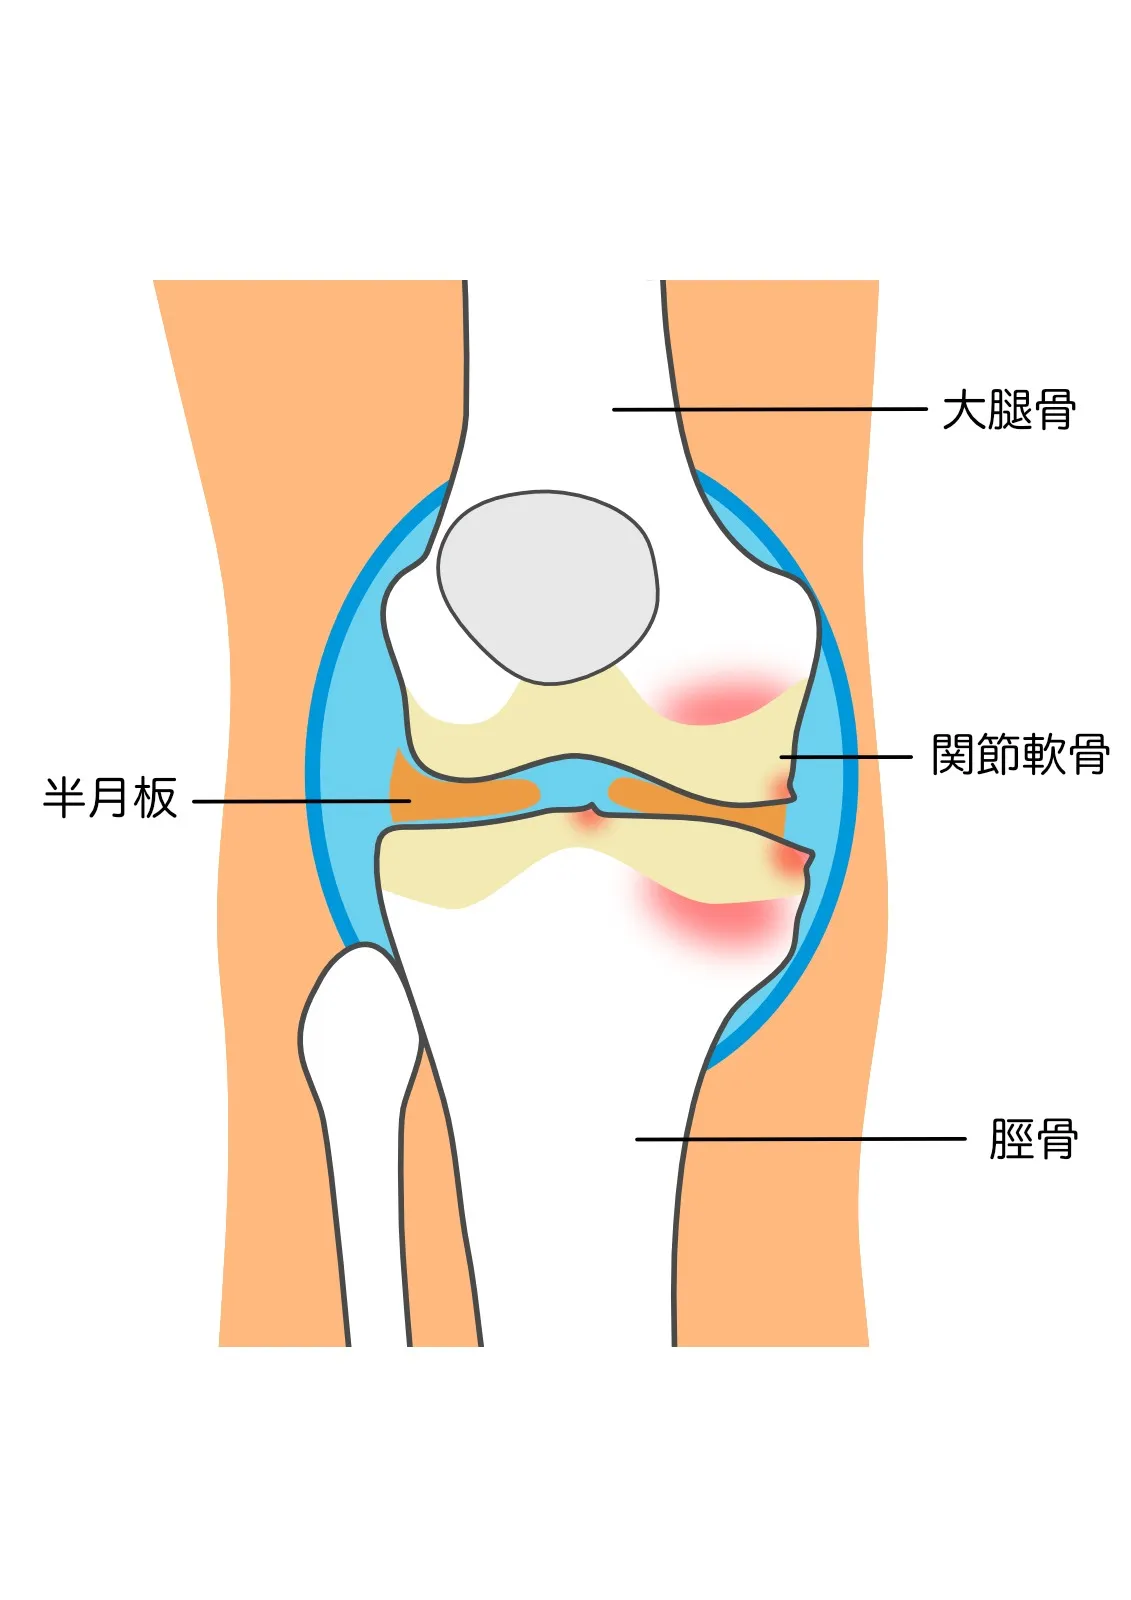 変形性膝関節症・膝痛は歩き方で改善(*^▽^*)股関節の向きが大事！　｜練馬区土支田さくら整体